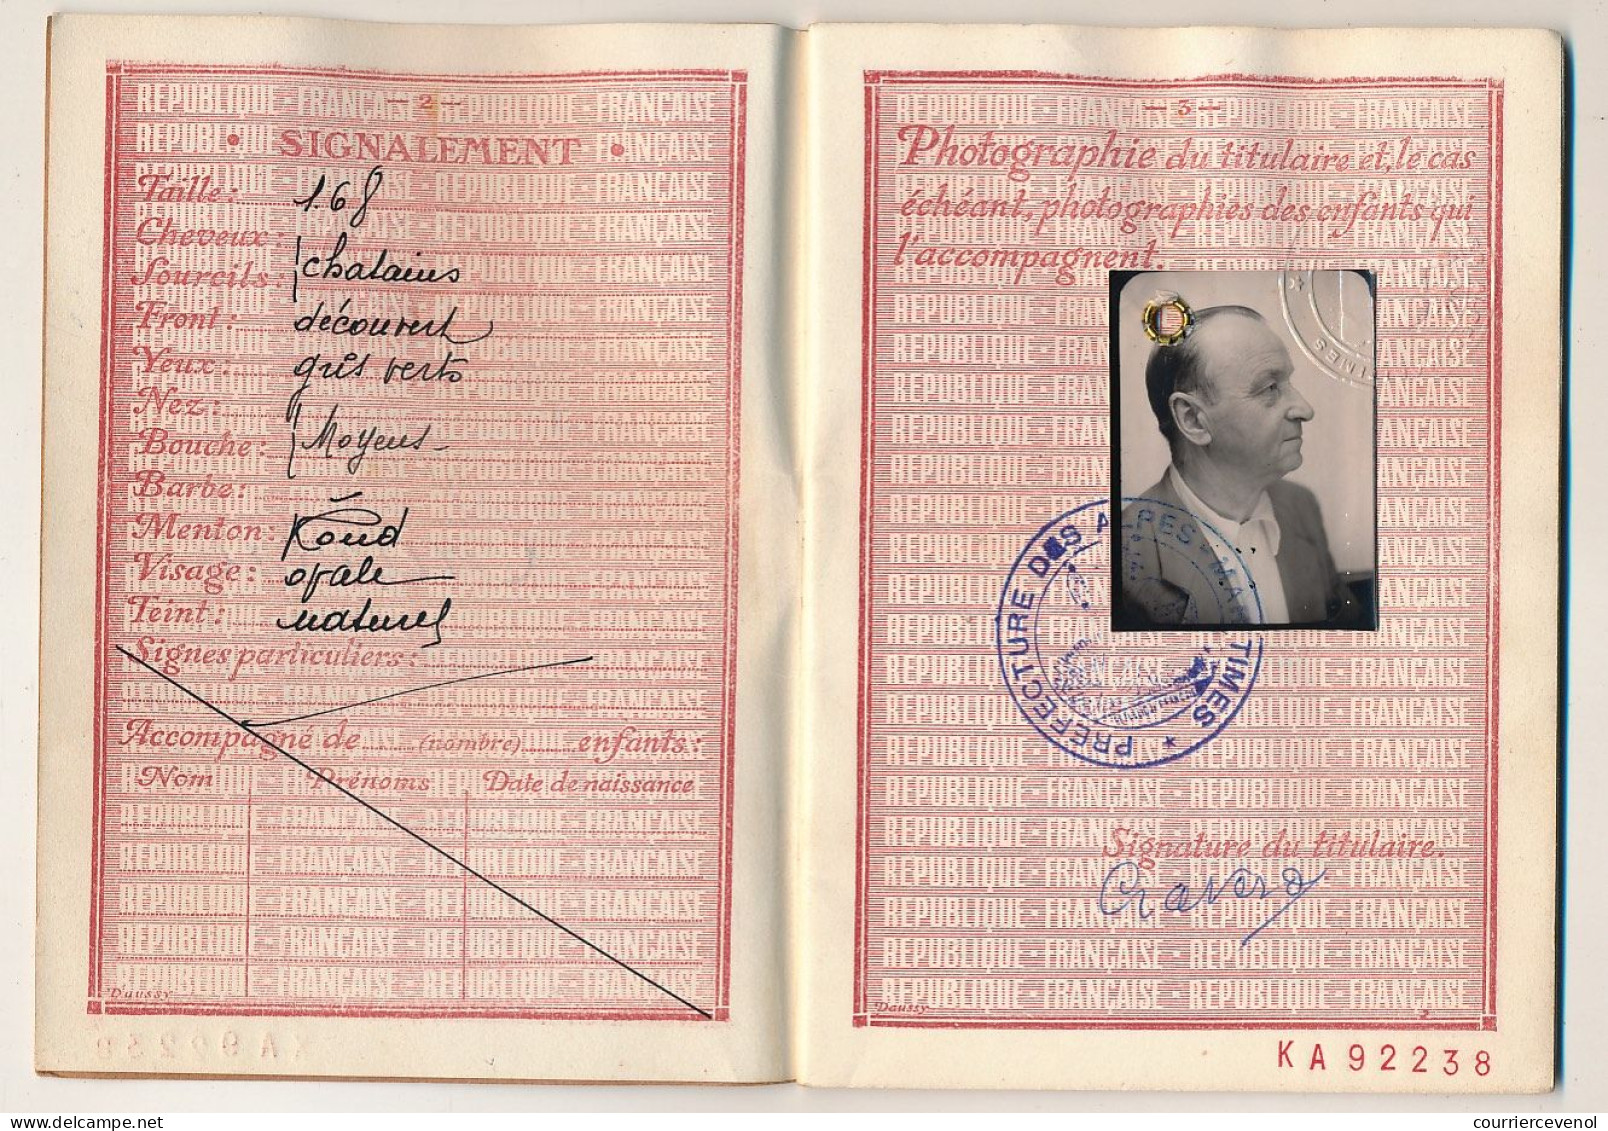 FRANCE - Passeport à L'étranger 700F  - Nice (Alpes Maritimes) - 1951 - Zonder Classificatie